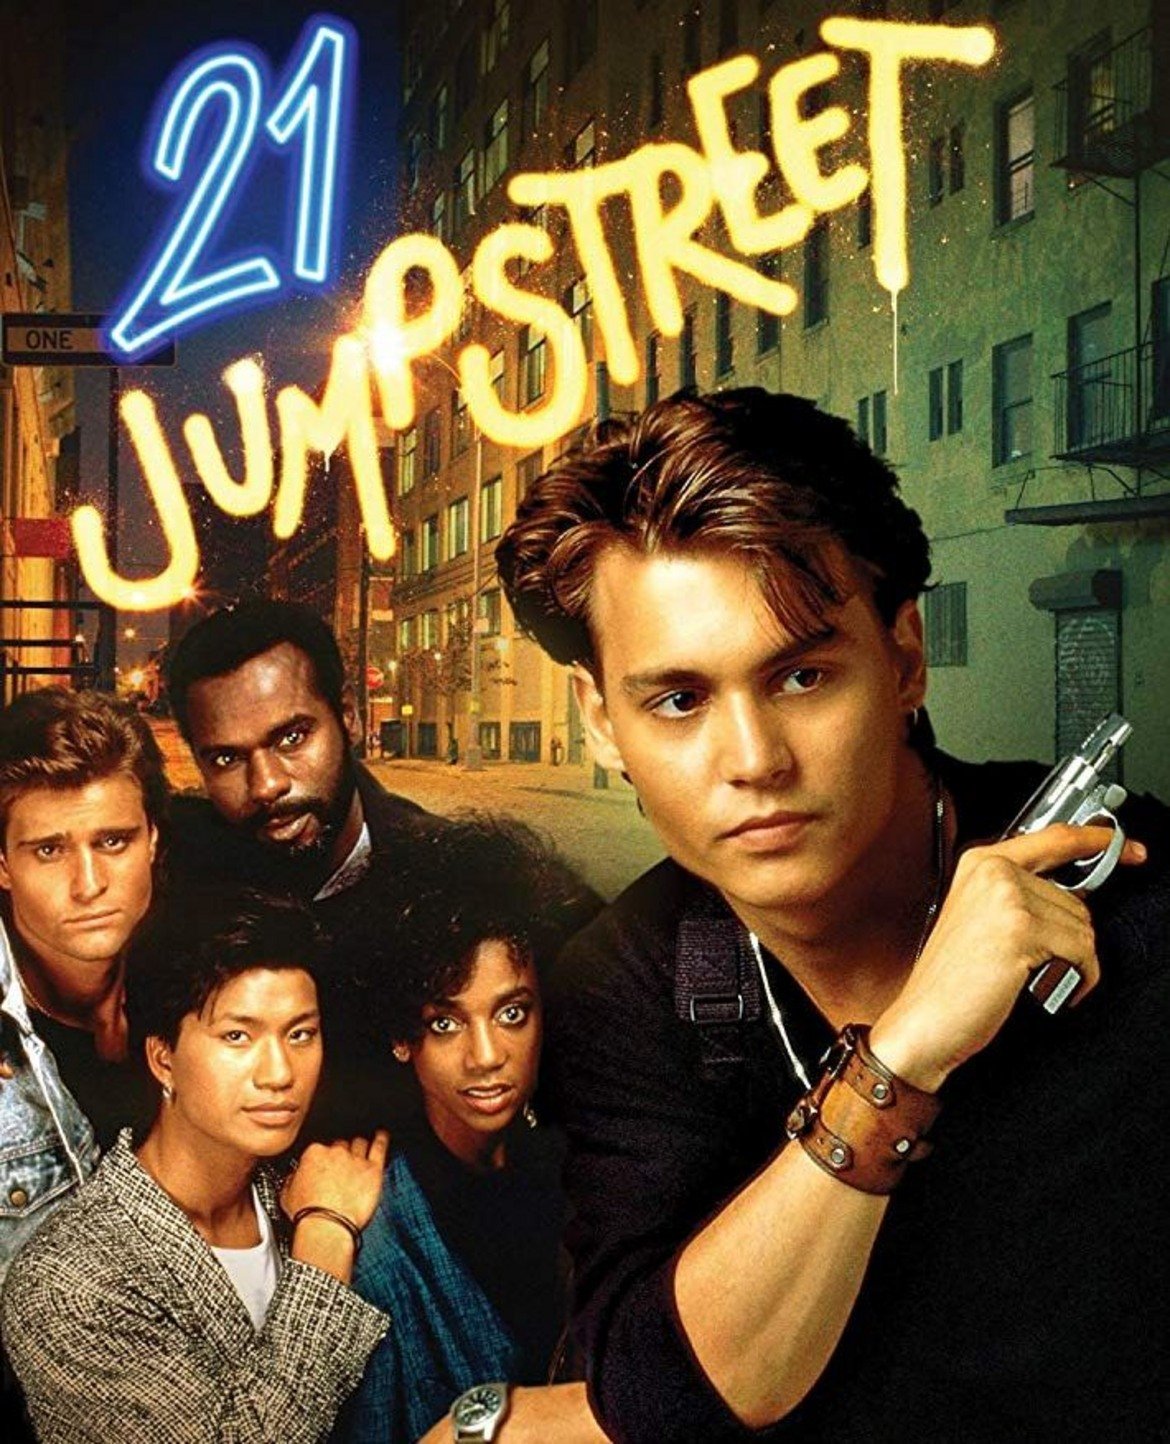 21 Jump Streеt

Полицейските сериали са любим жанр на мнозина и не е изненадващ успехът на 21 Jump Street - сериал от края на 80-те, който дава тласък на актьорската кариера на Джони Деп. Идеята тук е, че група полицейски служители изглеждат толкова млади, че могат да минат за тийнейджъри. Това им позволява да разследват случаи, които по-възрастните им колеги не могат, като влизат под прикритие в гимназии и колежи.